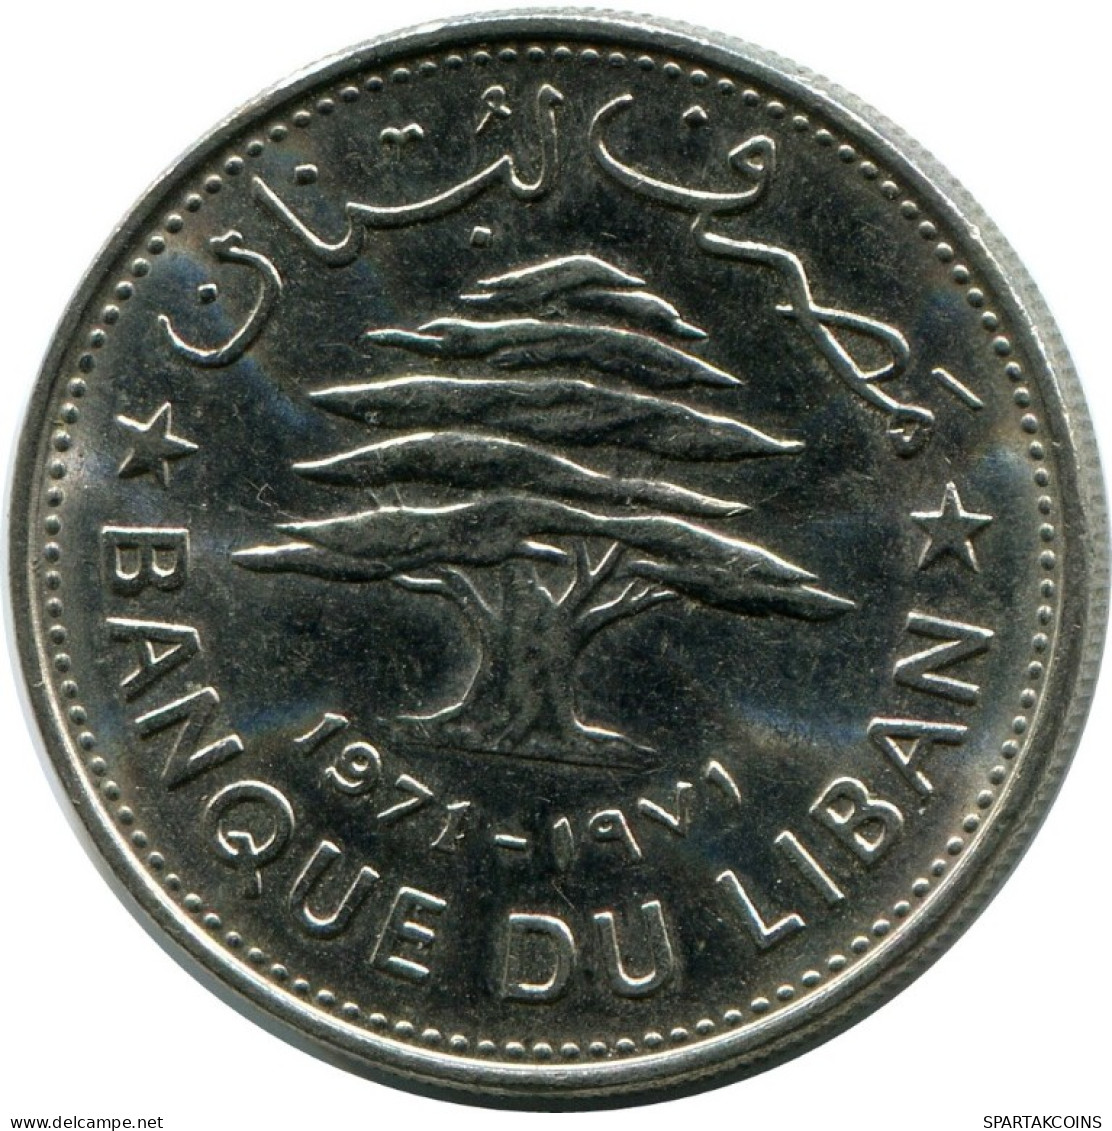 50 PIASTRES 1971 LEBANON Coin #AH803.U.A - Libanon